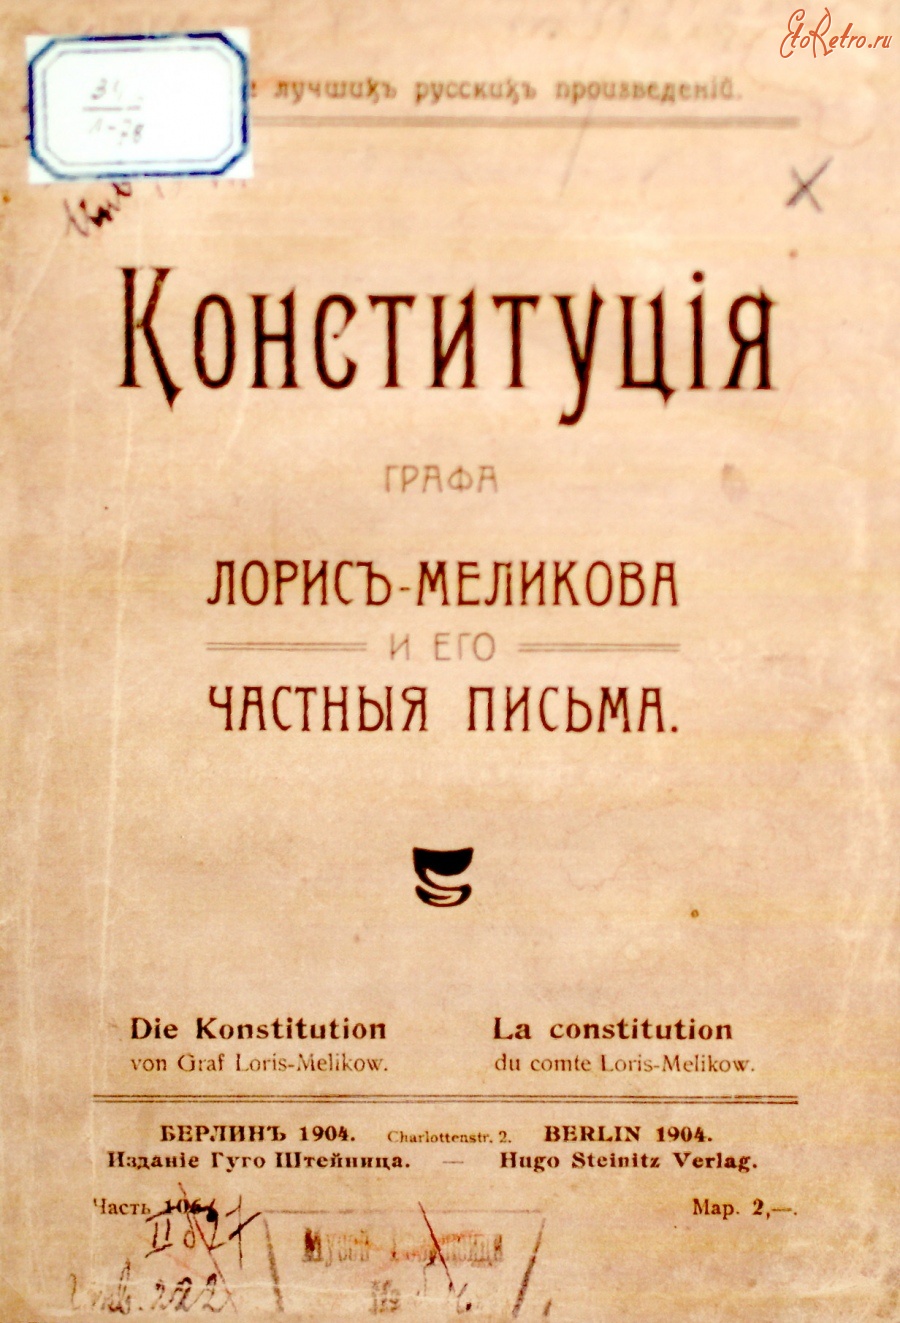 Документы - Обложка Конституции Лорис-Меликова 1904 год издания